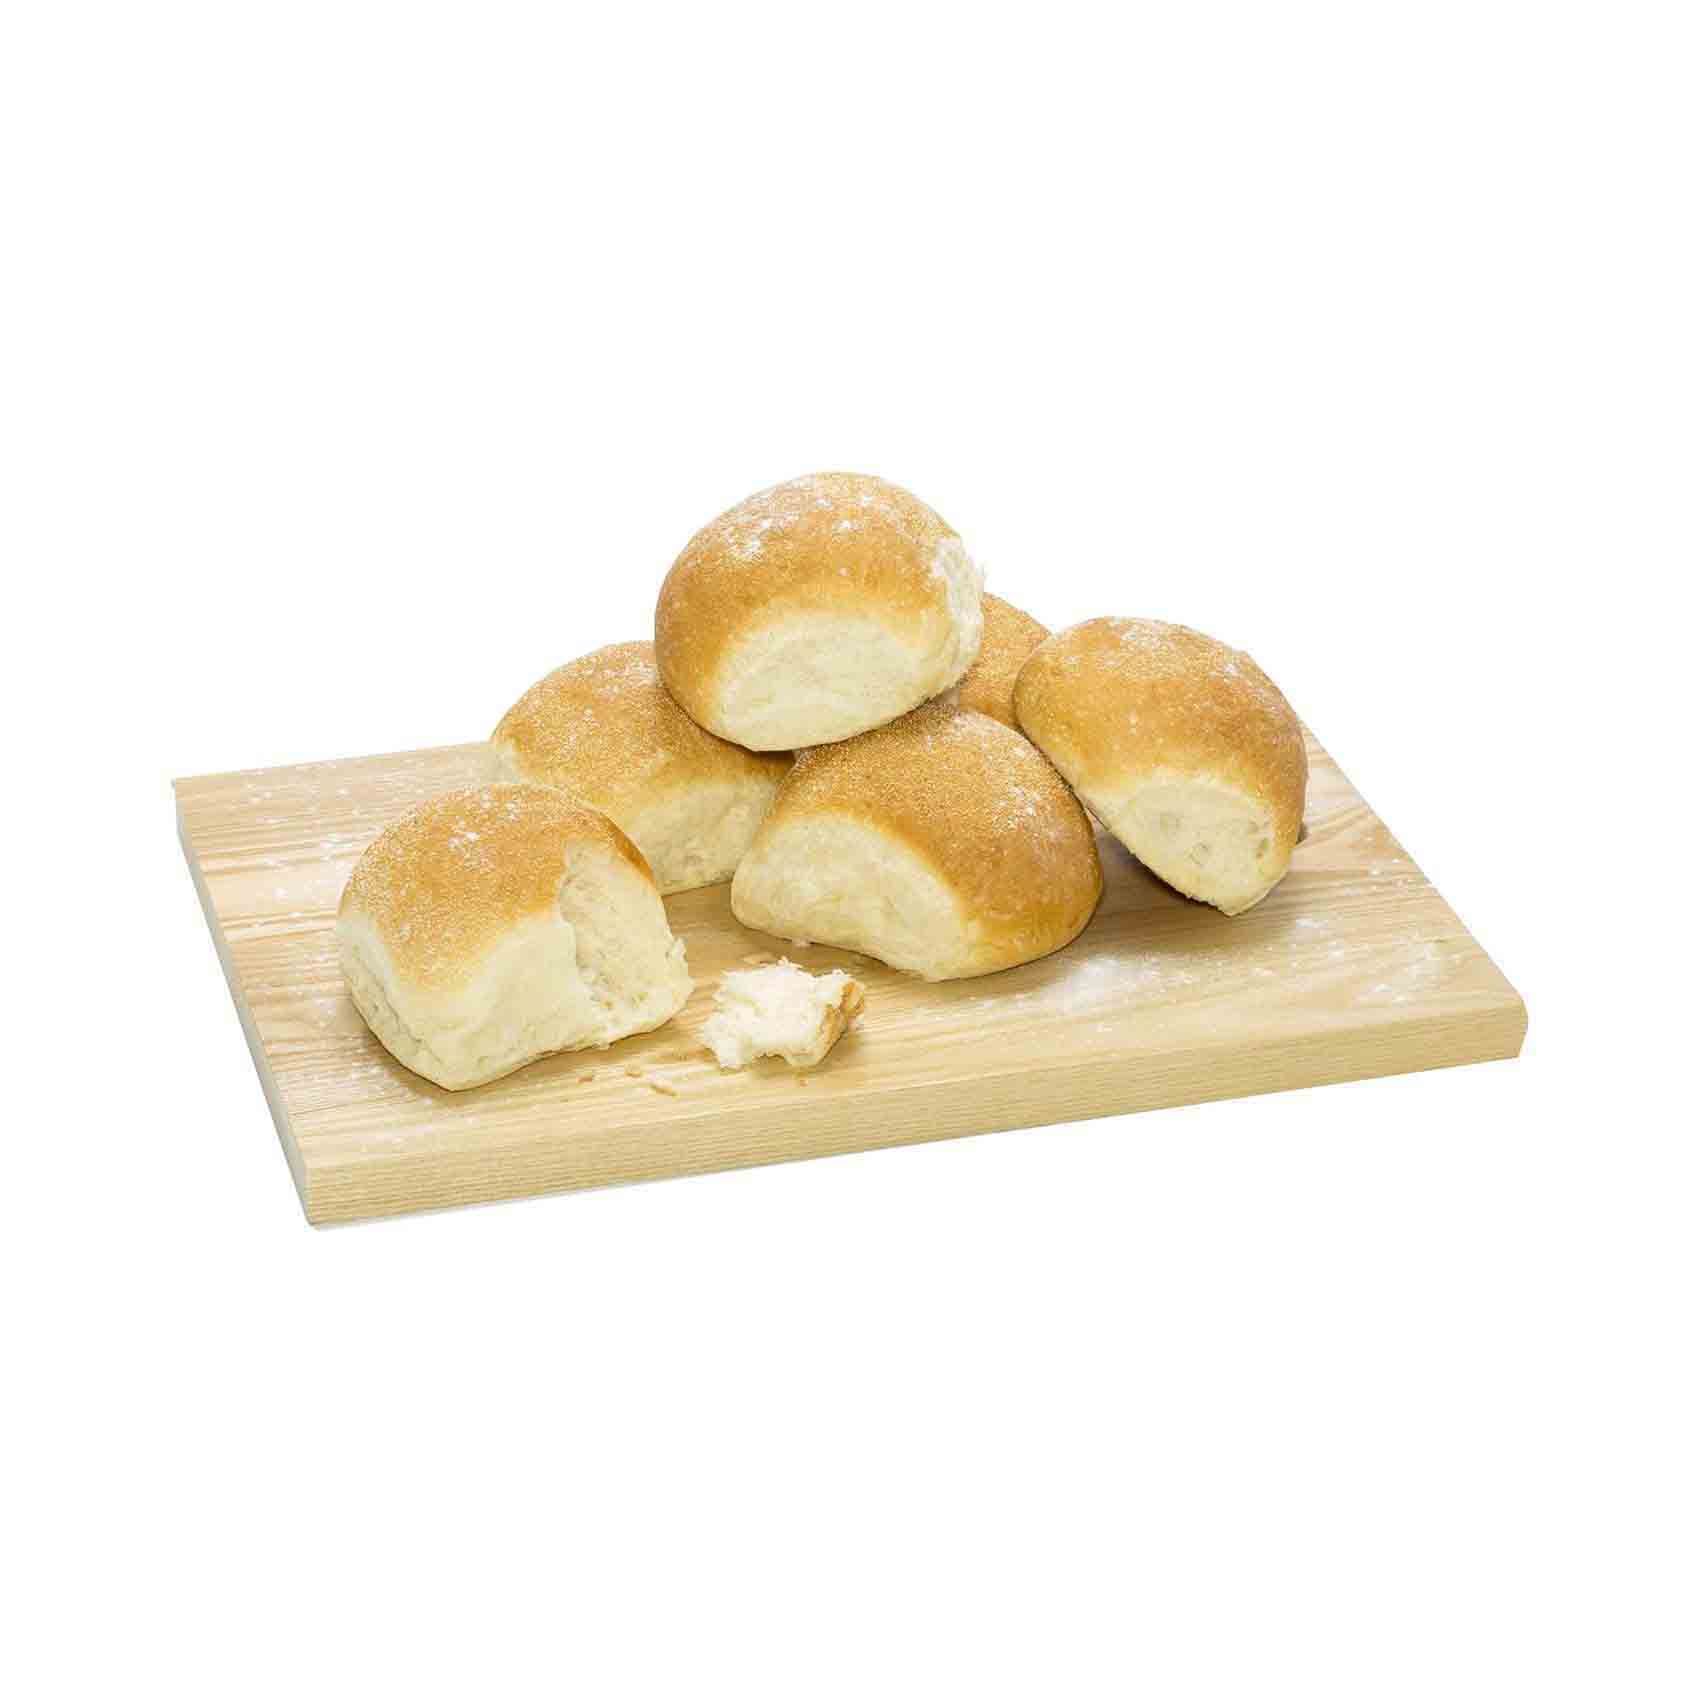 كابريكورن خبز بانديسال حزمة من 9 قطع